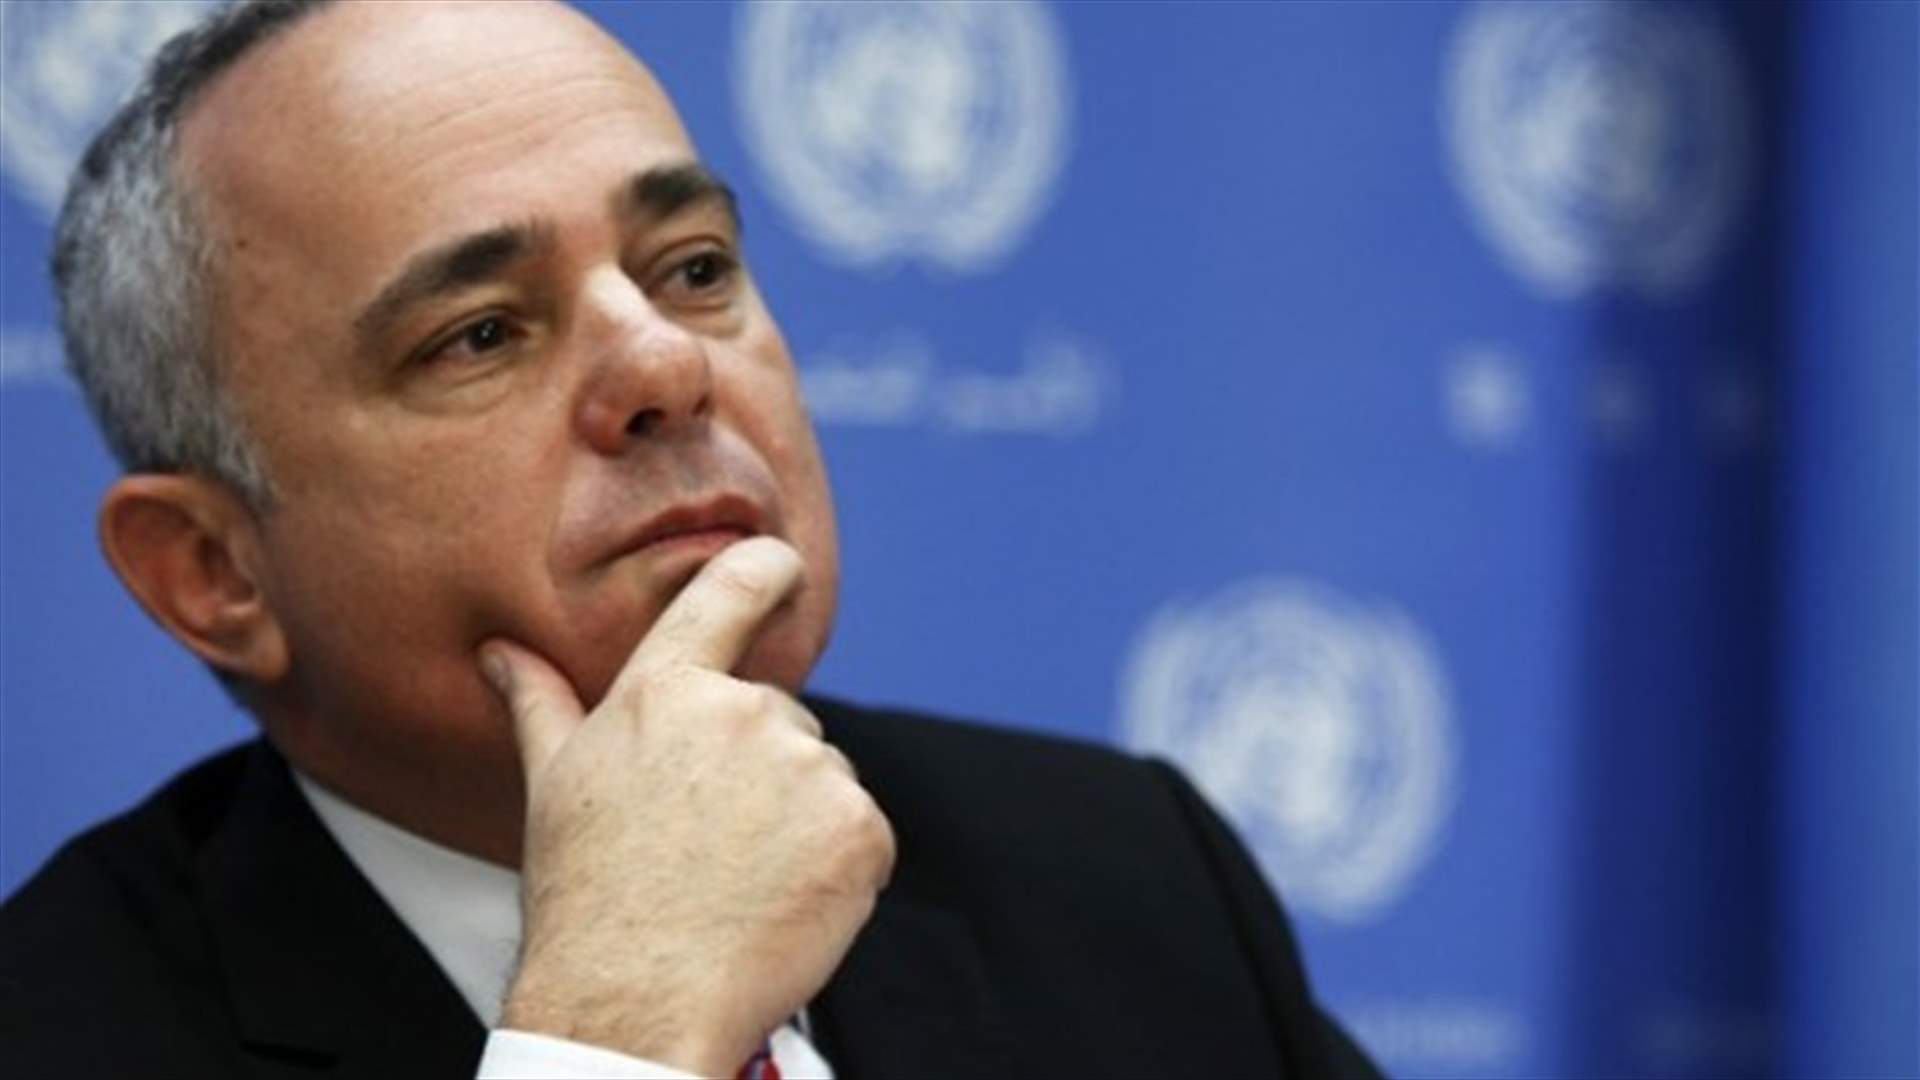 وزير إسرائيلي يكشف عن اتصالات سرية بالسعودية